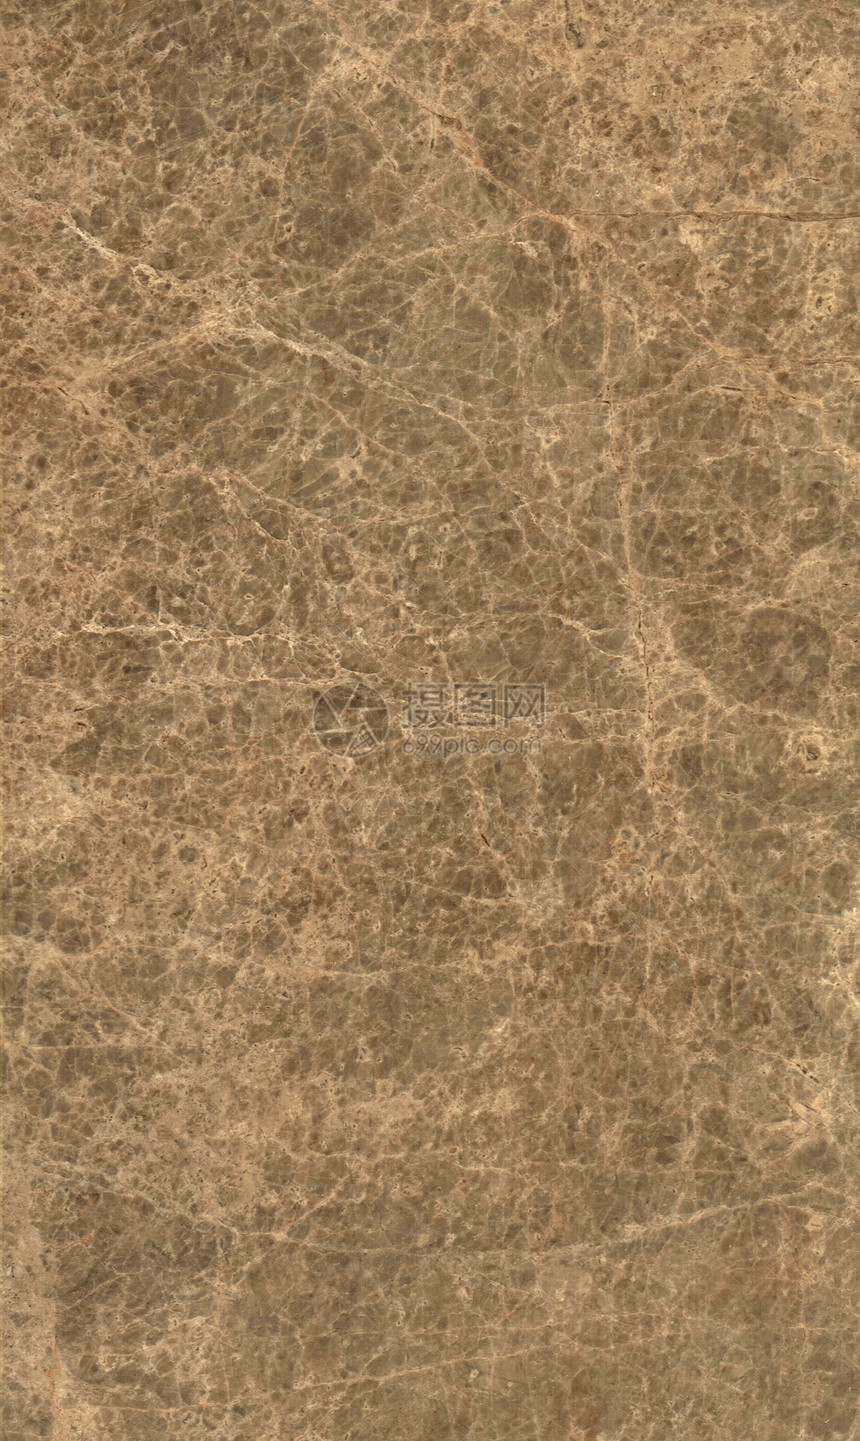 布朗大理石纹理背景高分辨率扫描柜台花岗岩灰色地面帆布岩石棕色墙纸石头褐色图片